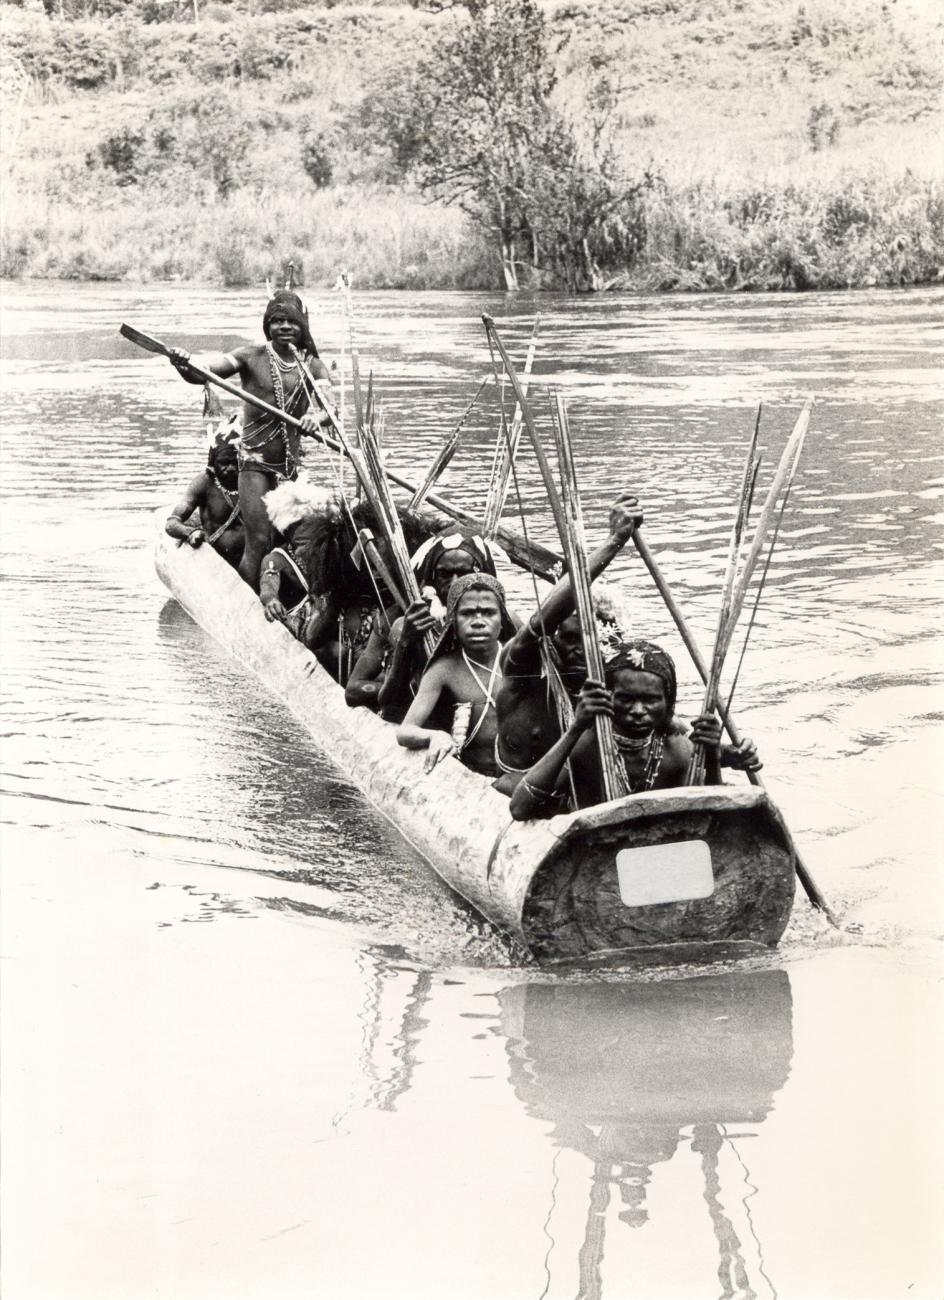 BD/326/37 - 
Groep Ekagi-mannen in prauw op de rivier Jawe
